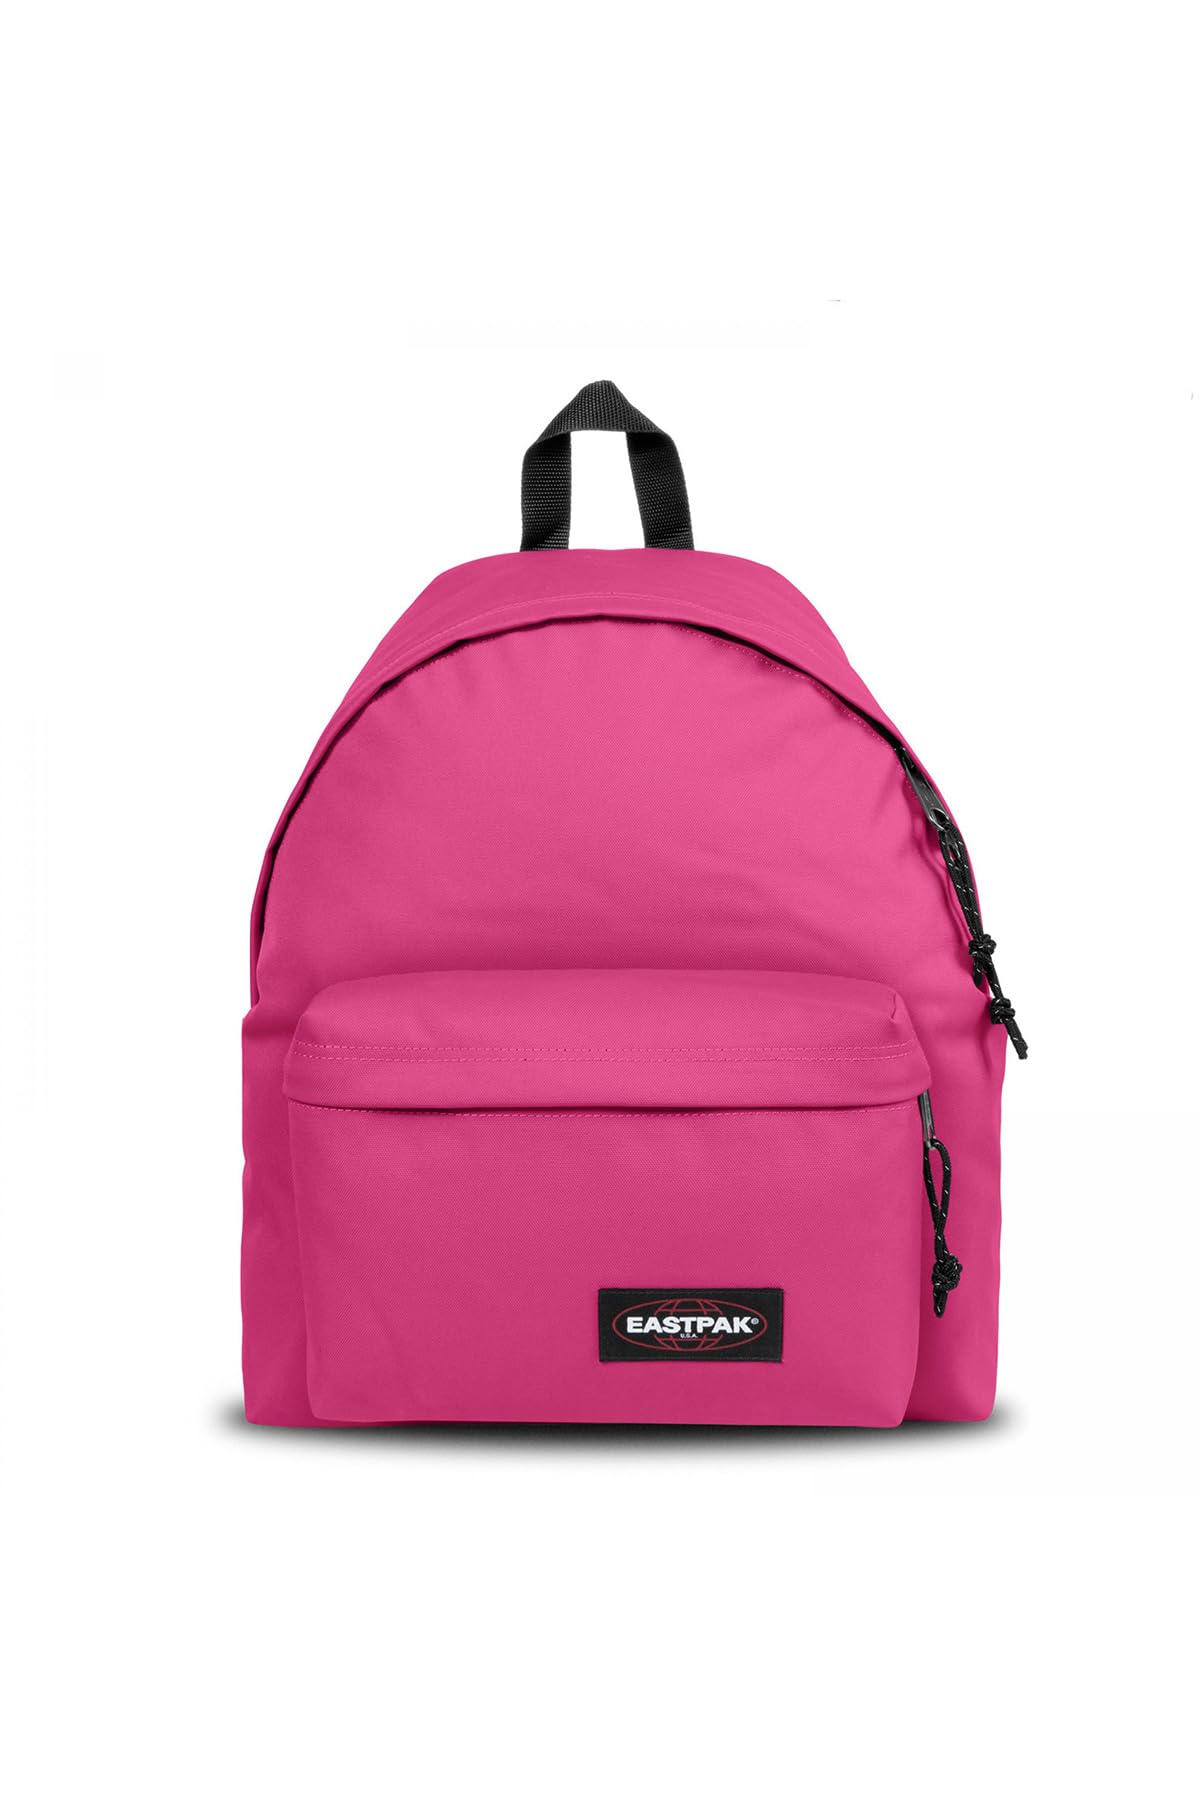 Eastpak Padded Pak'r Backpack - Bag for Travel, Work, or Bookbag - Pink Escape